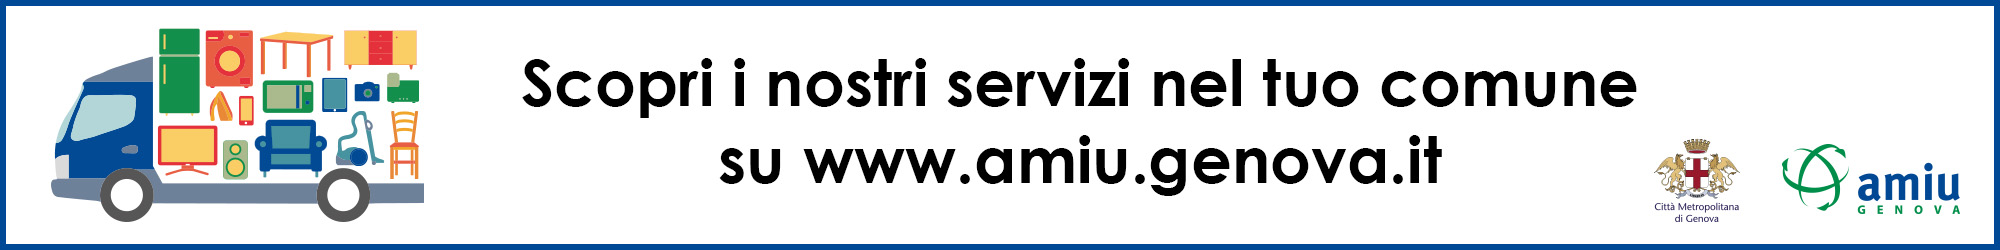 AMIU - Servizio comune